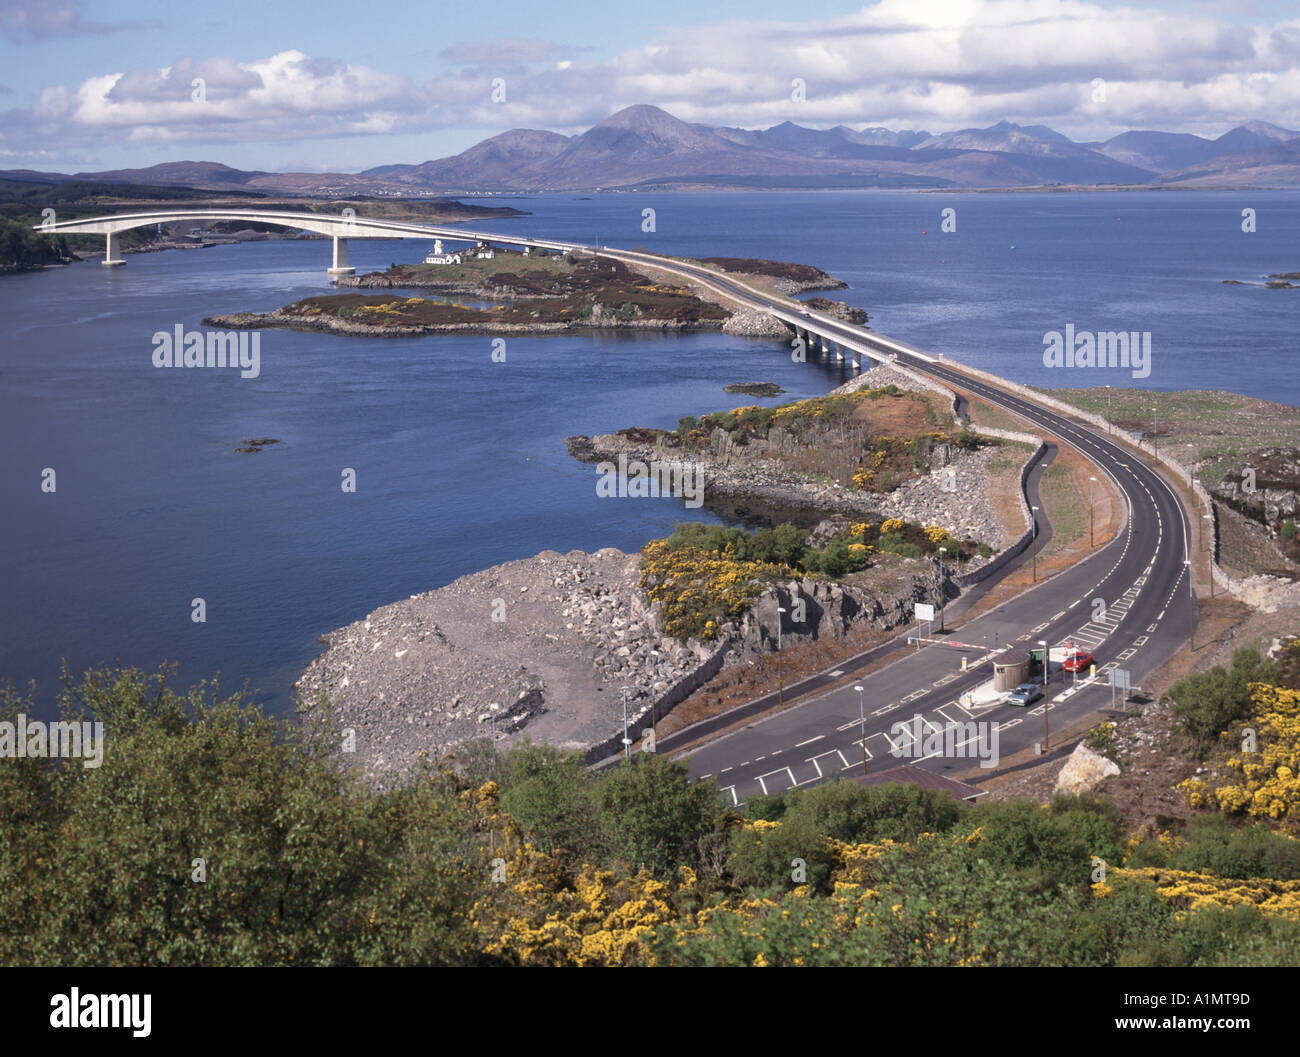 Landschaft Isle of Skye Straße Mautbrücke verbindet Kyleakin (links) & Lochalsh Festland über Loch Alsh schottische Highlands Berglandschaften Schottland, Vereinigtes Königreich Stockfoto